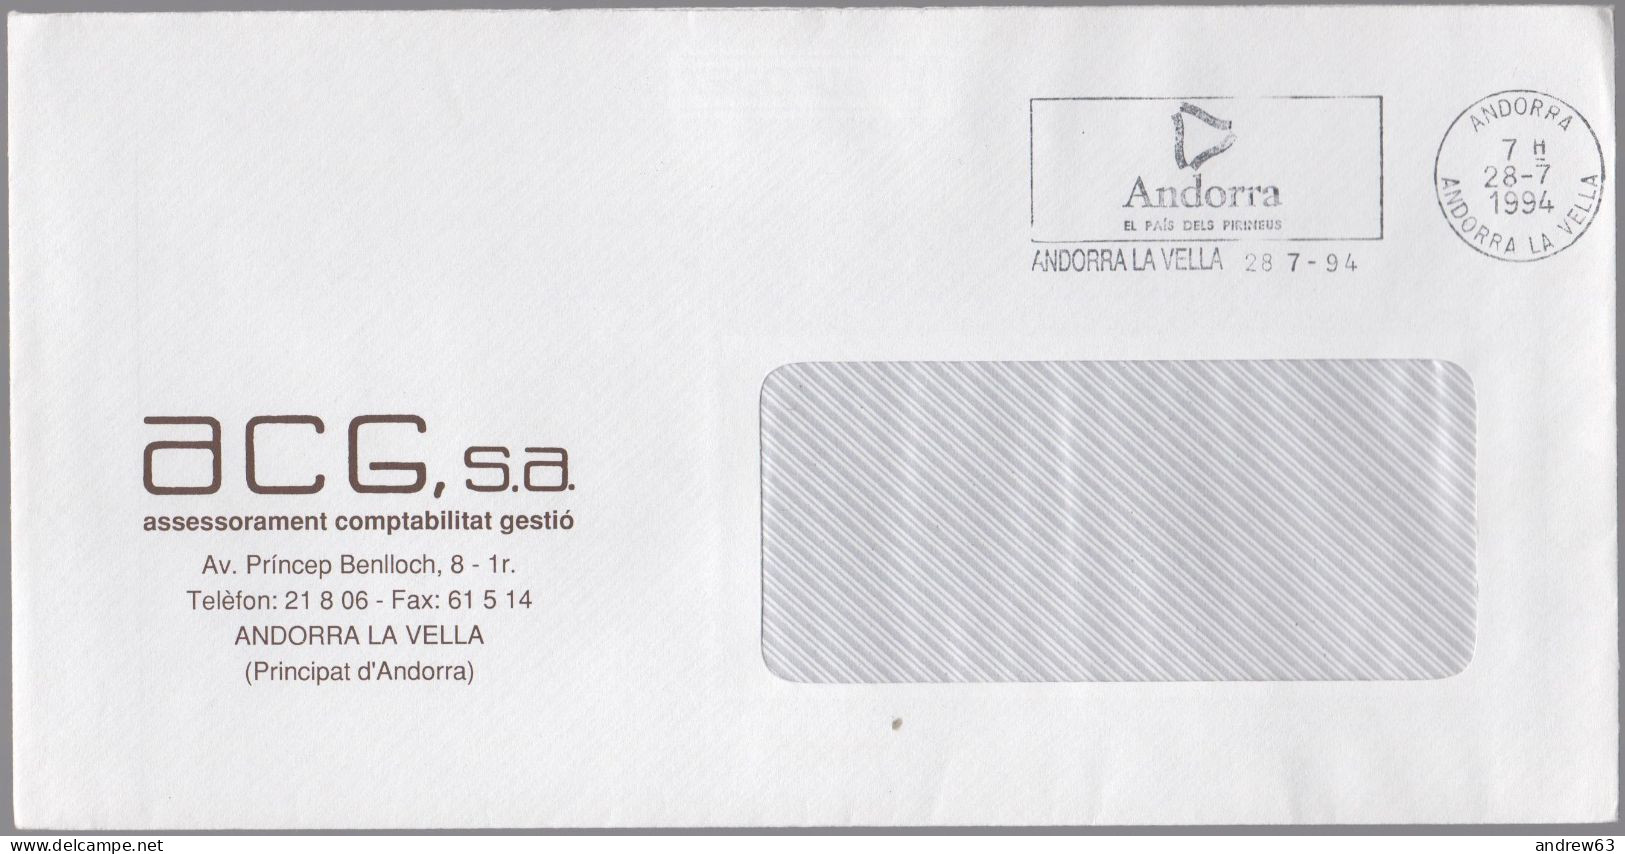 ANDORRA - ANDORRE - 1994 - Lettre En Franchise + Flamme - ACG, S.a. - Viaggiata Da Andorra La Vella - Cartas & Documentos